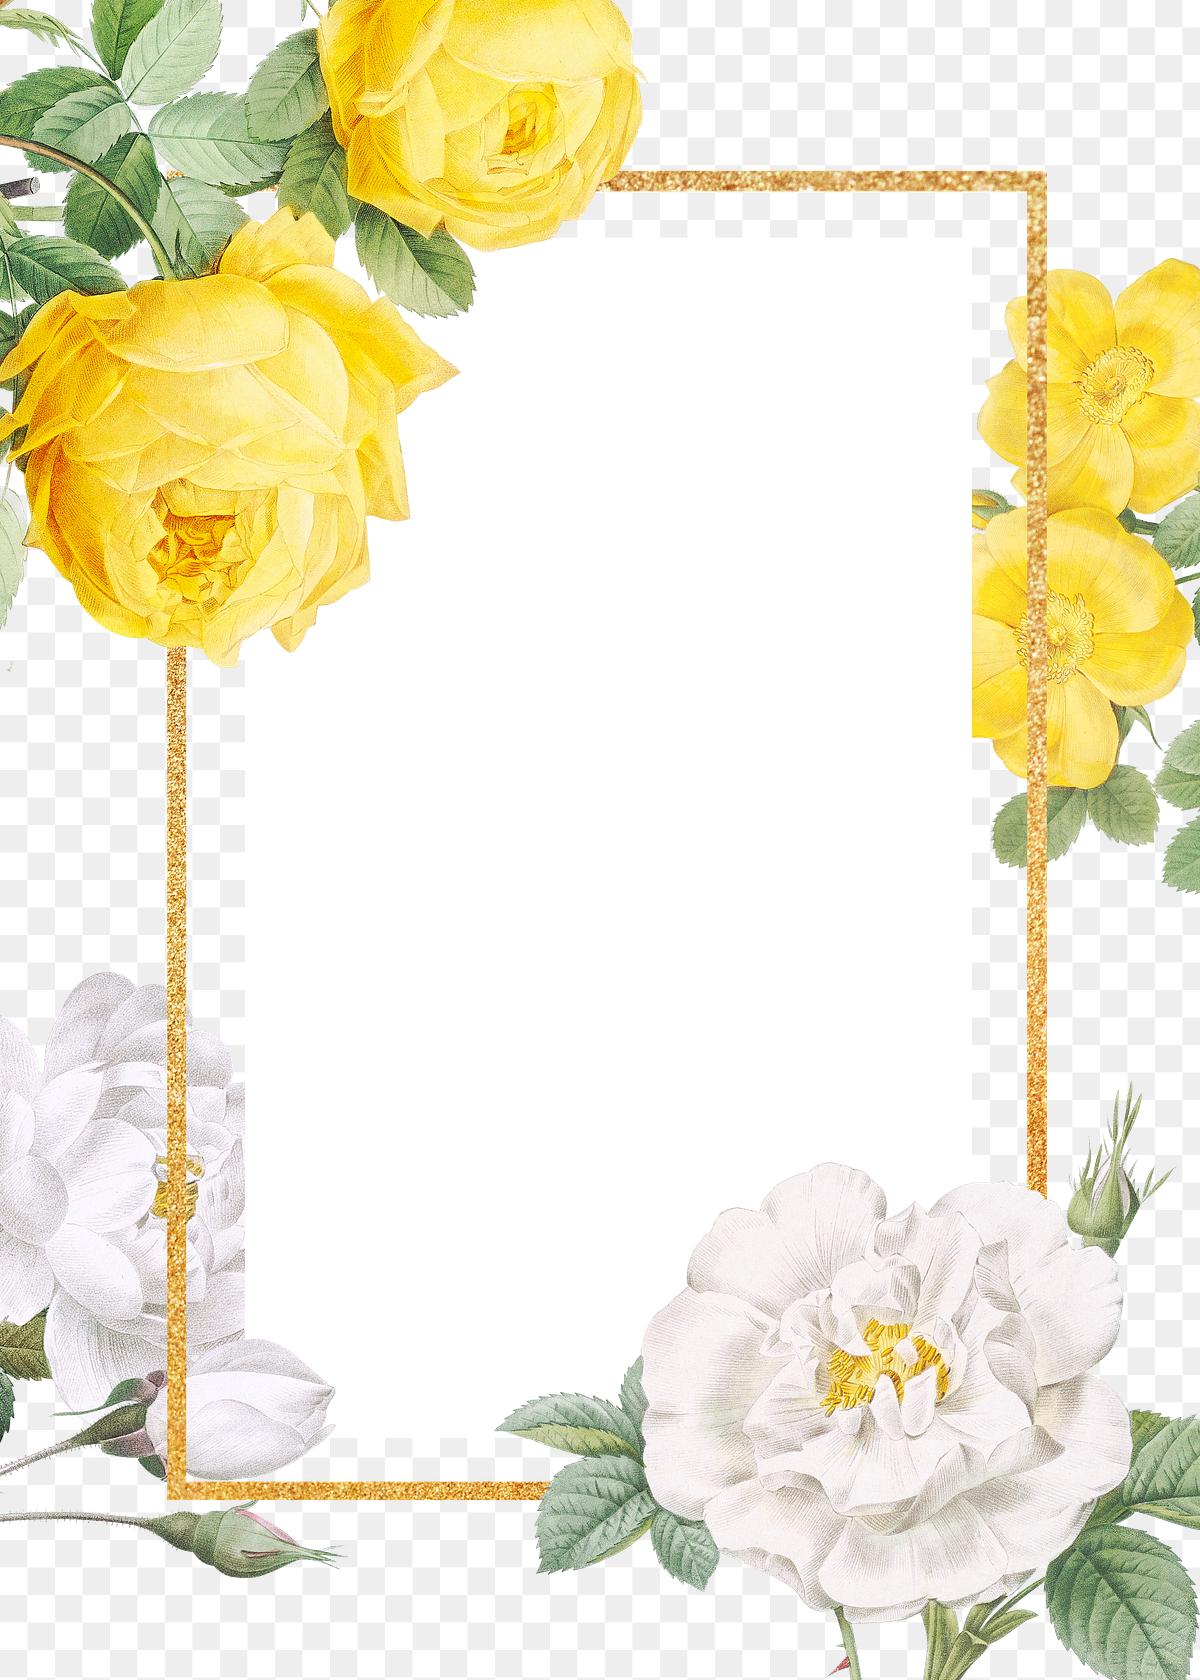 Floral design wedding invitation mockup | Free transparent ...